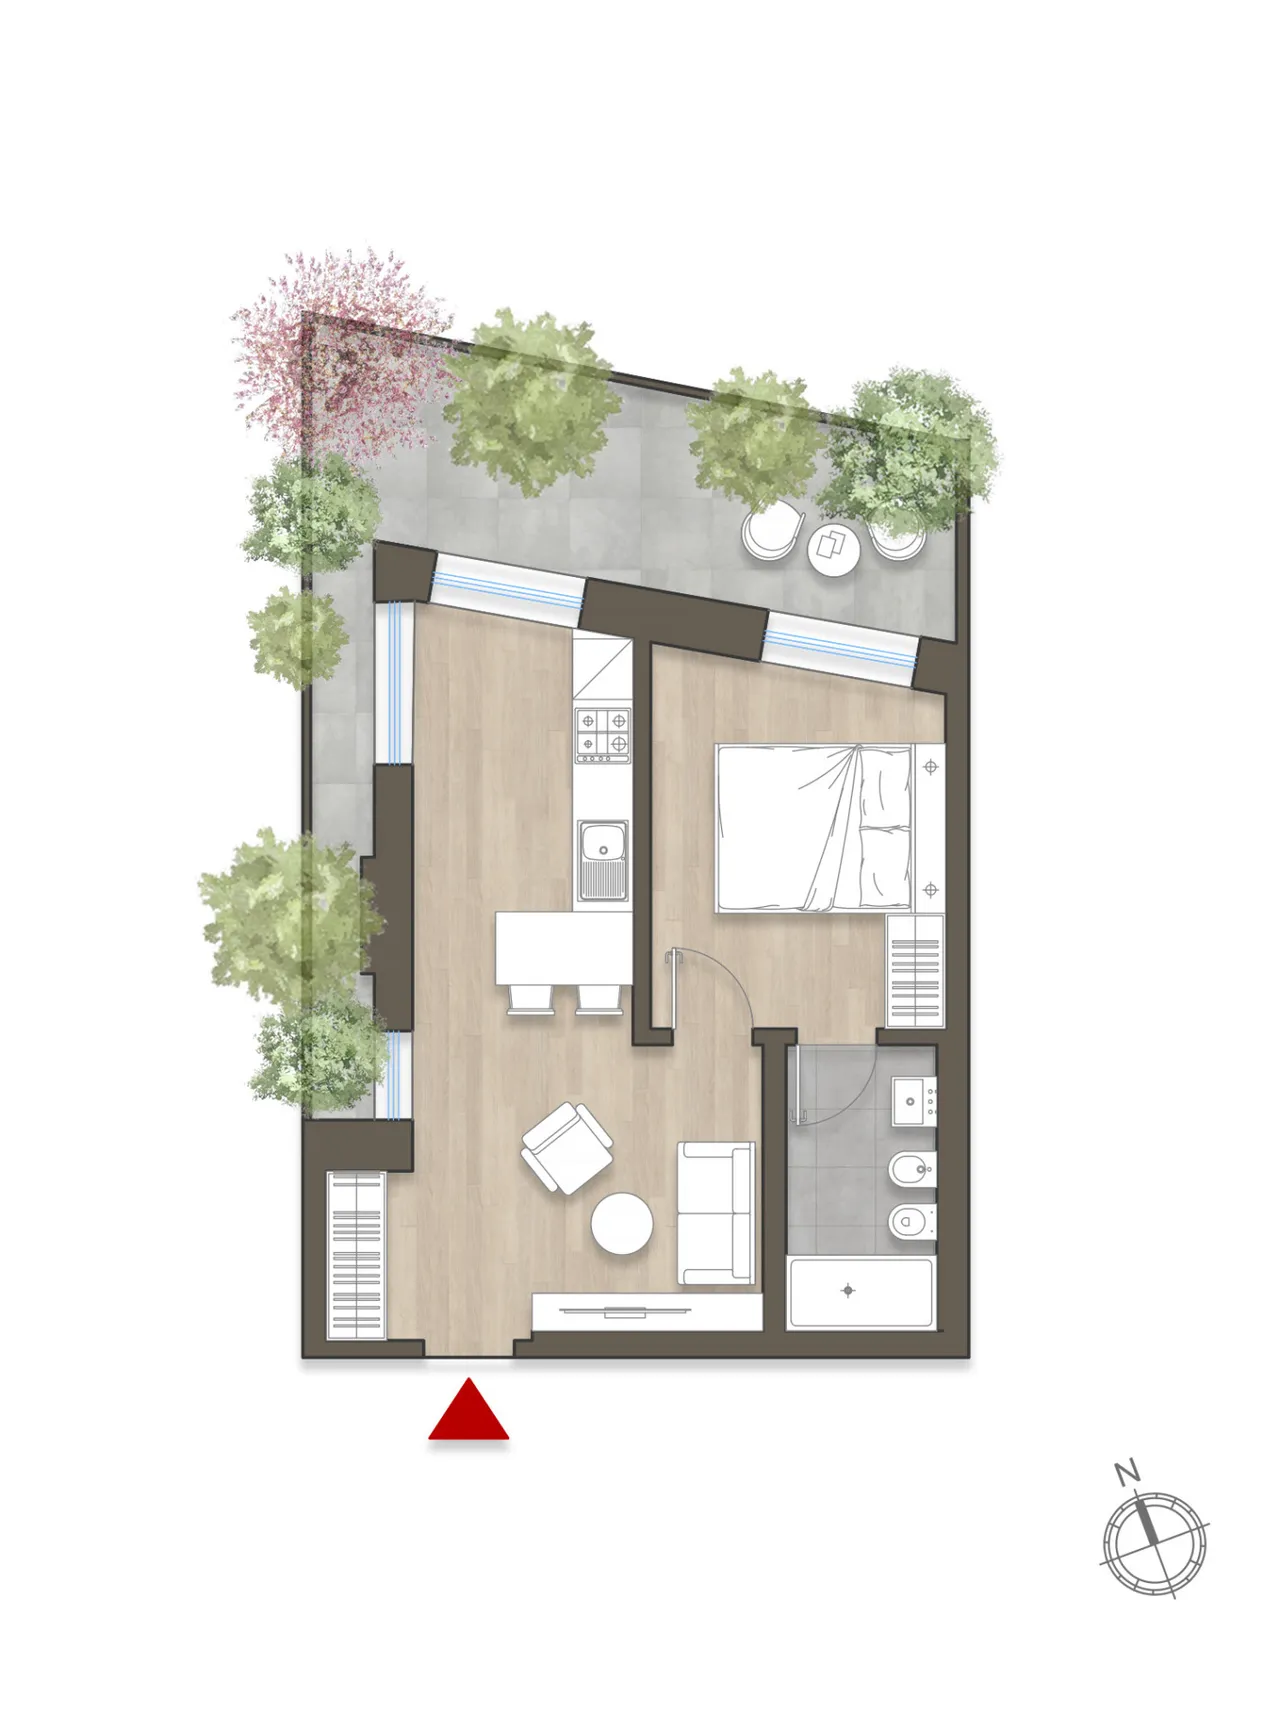 living - San Martino 15 - Living - Dils - Floor Plan - 1